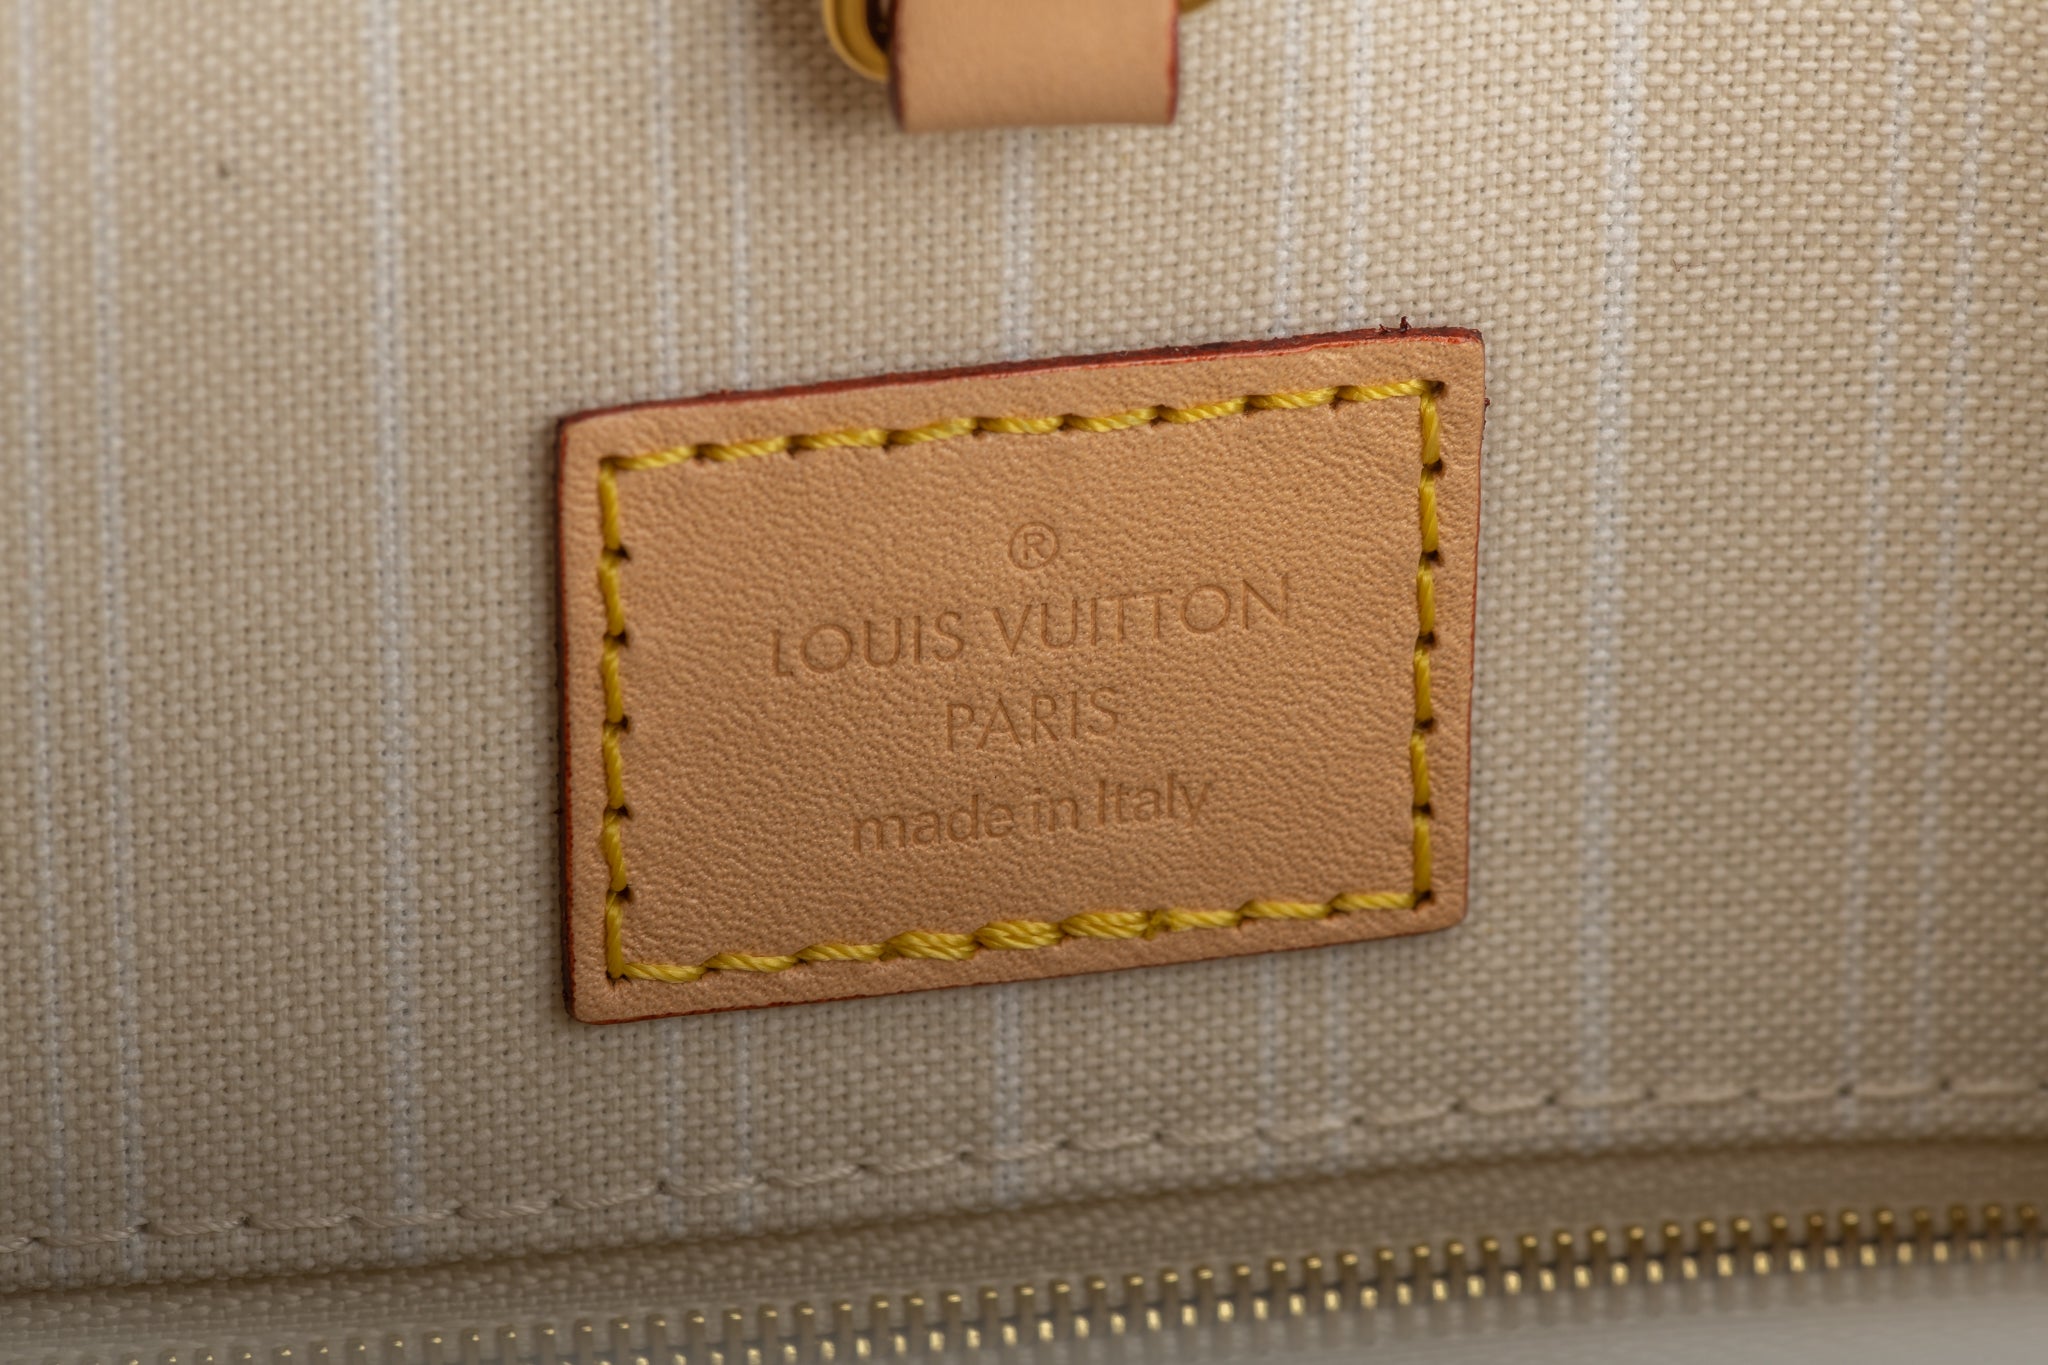 New Louis Vuitton 2021 On The Go Saint Tropez Bag